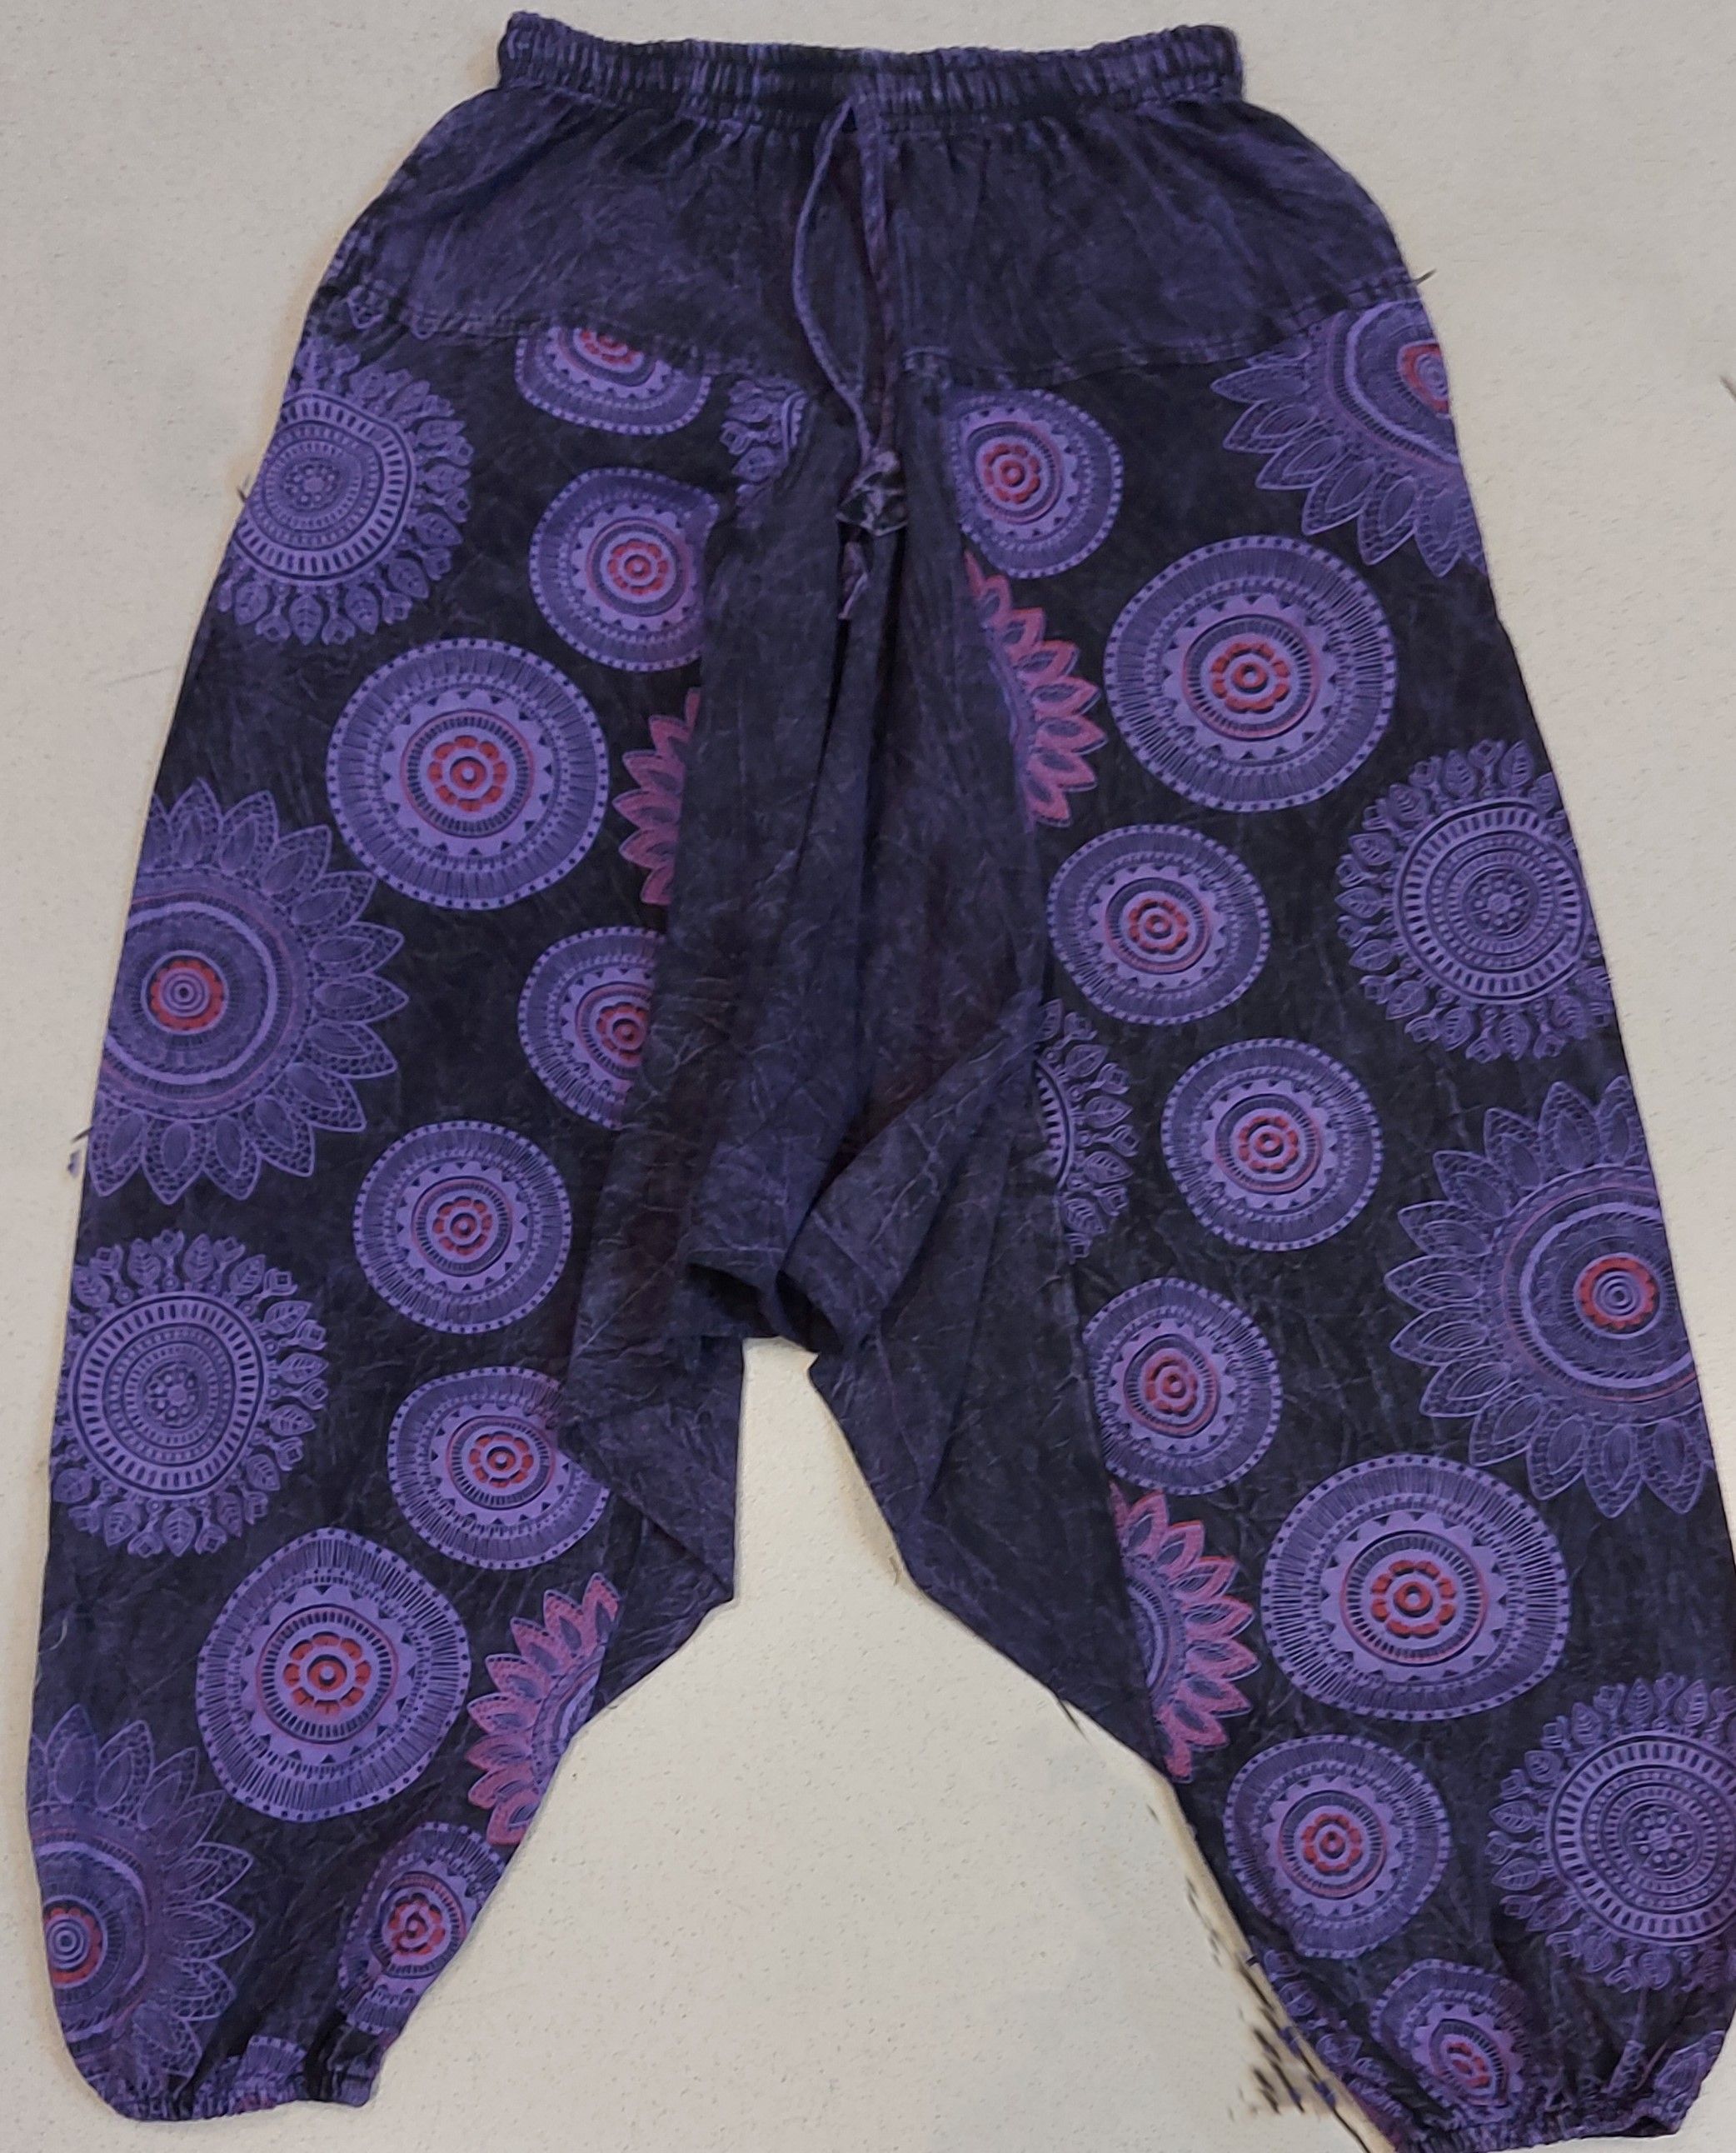 Штаны афгани плотные, цвет фиолетовый, хлопок. р-р S/M, L/XL. Непал. 